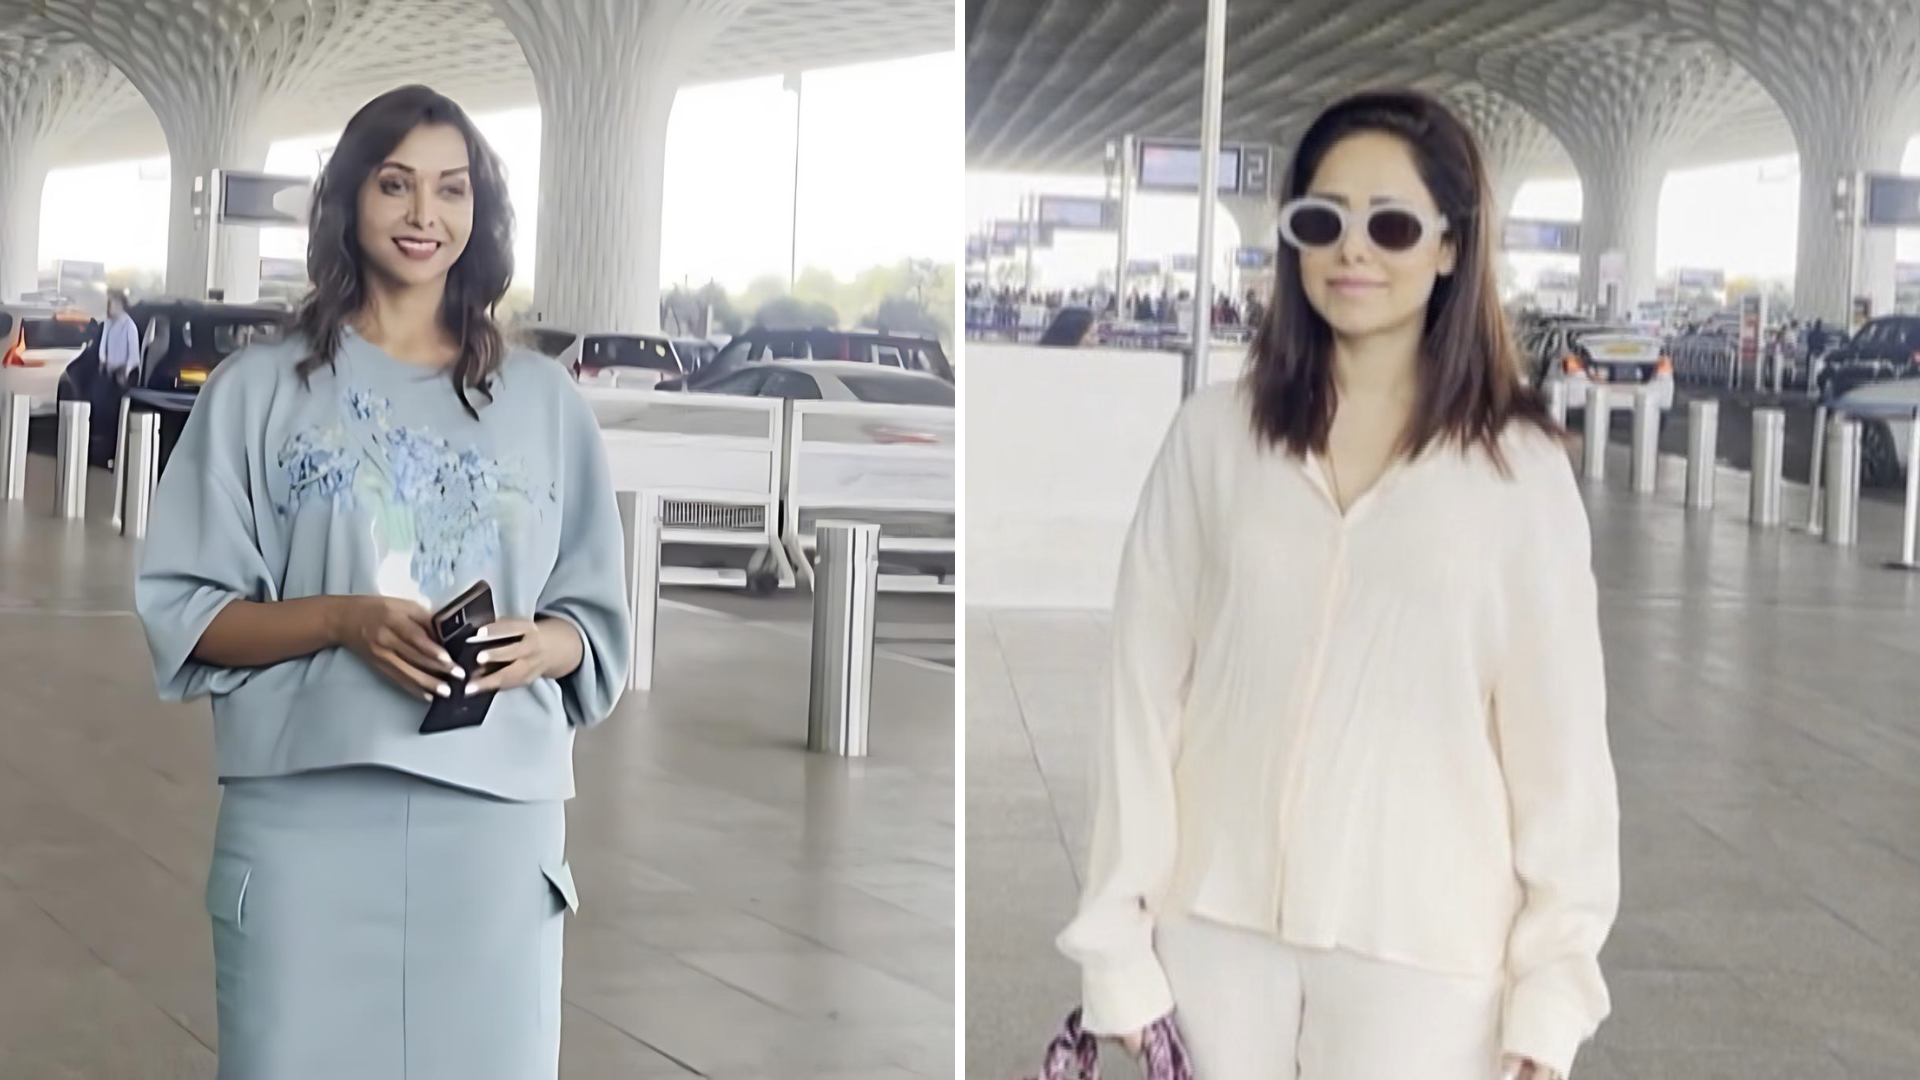 नुसरत भरूचा और अनुप्रिया गोयनका मुंबई एयरपोर्ट पर आईं नजर, देखें तस्वीरें